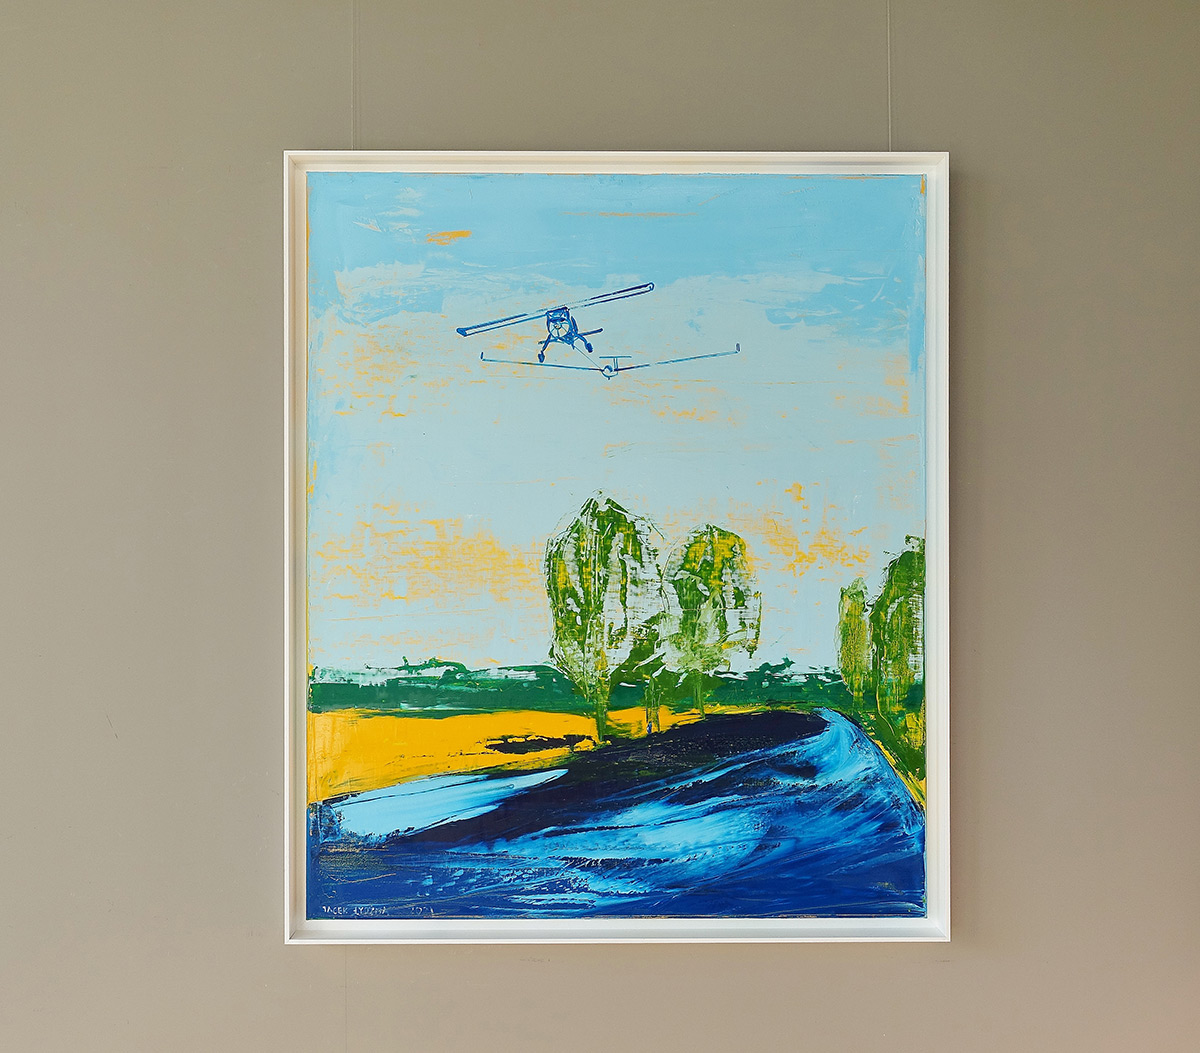 Jacek Łydżba - Landscape with glider towing